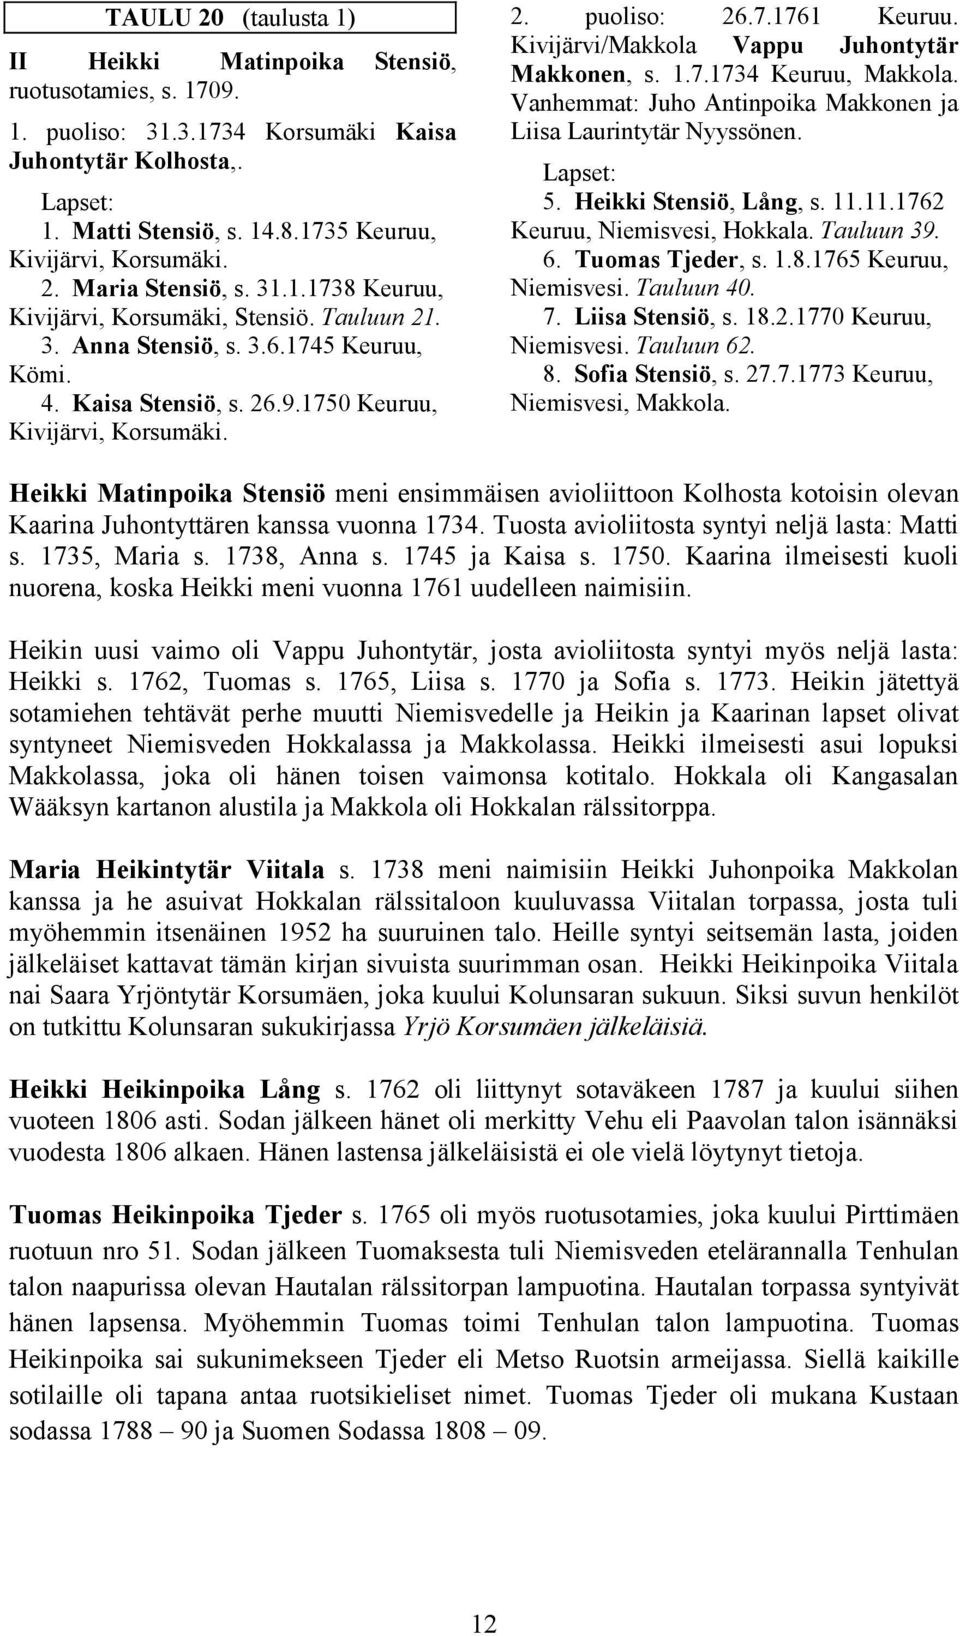 Kivijärvi/Makkola Vappu Juhontytär Makkonen, s. 1.7.1734 Keuruu, Makkola. Vanhemmat: Juho Antinpoika Makkonen ja Liisa Laurintytär Nyyssönen. 5. Heikki Stensiö, Lång, s. 11.